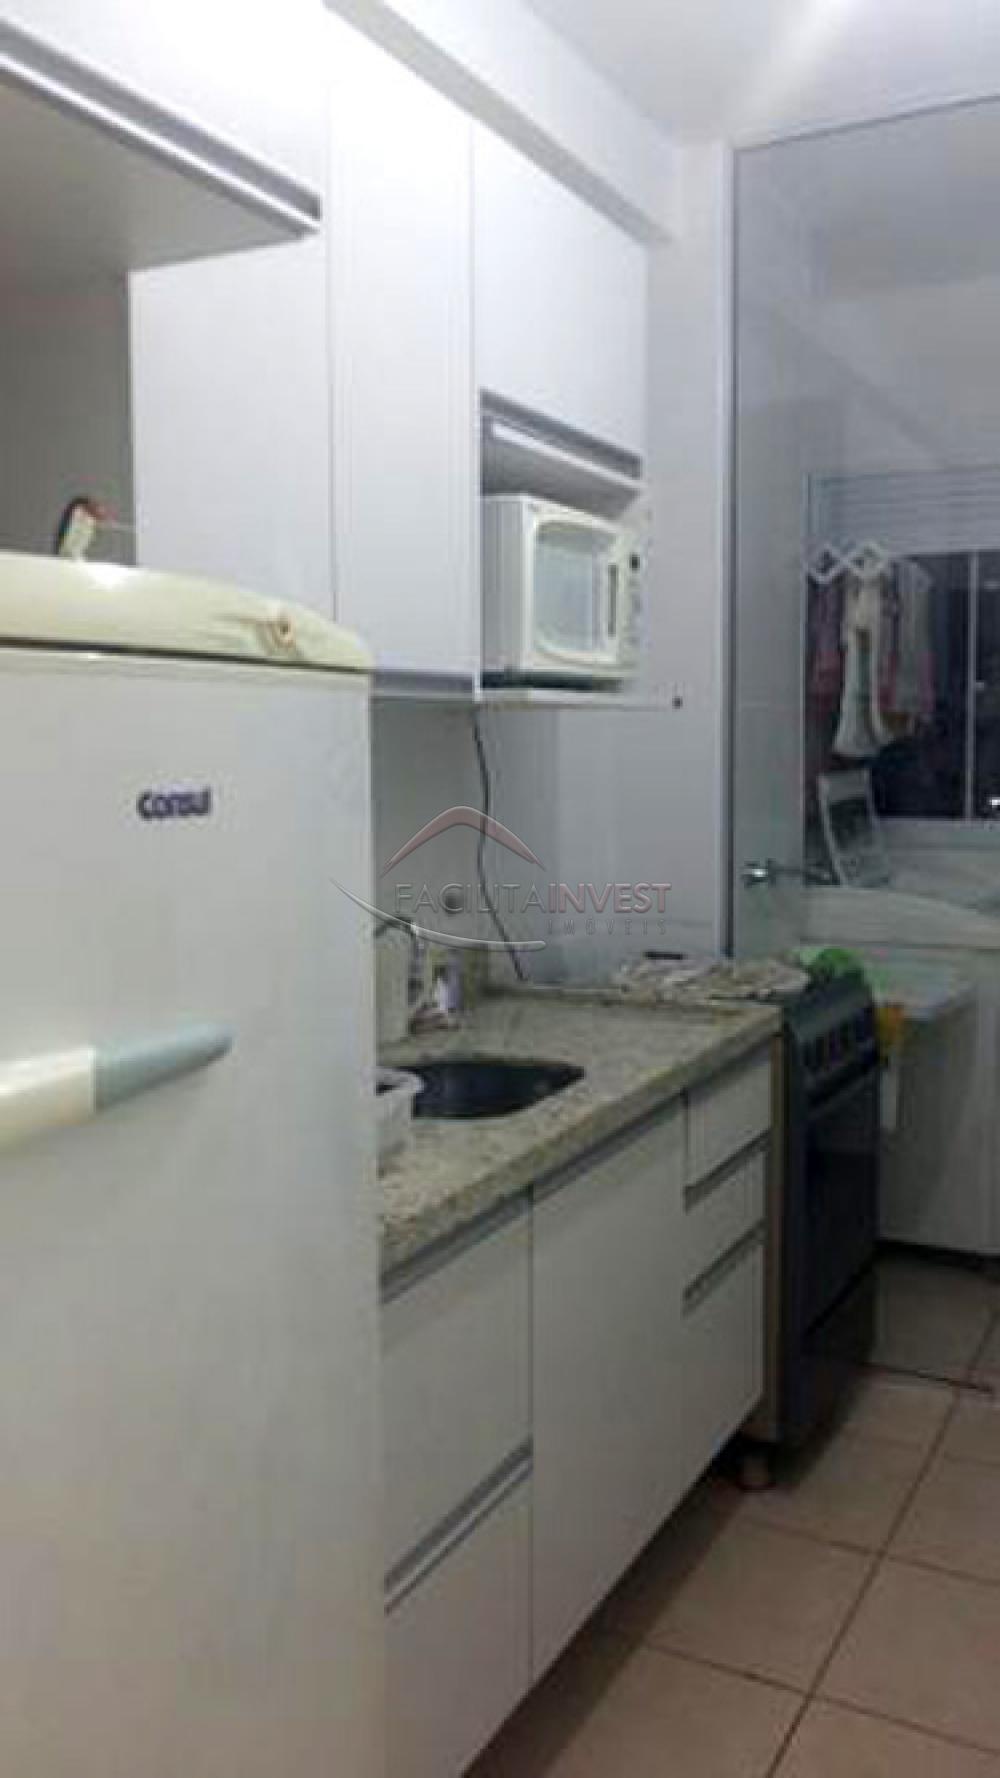 Alugar Apartamentos / Apartamento Mobiliado em Ribeirão Preto R$ 1.500,00 - Foto 6